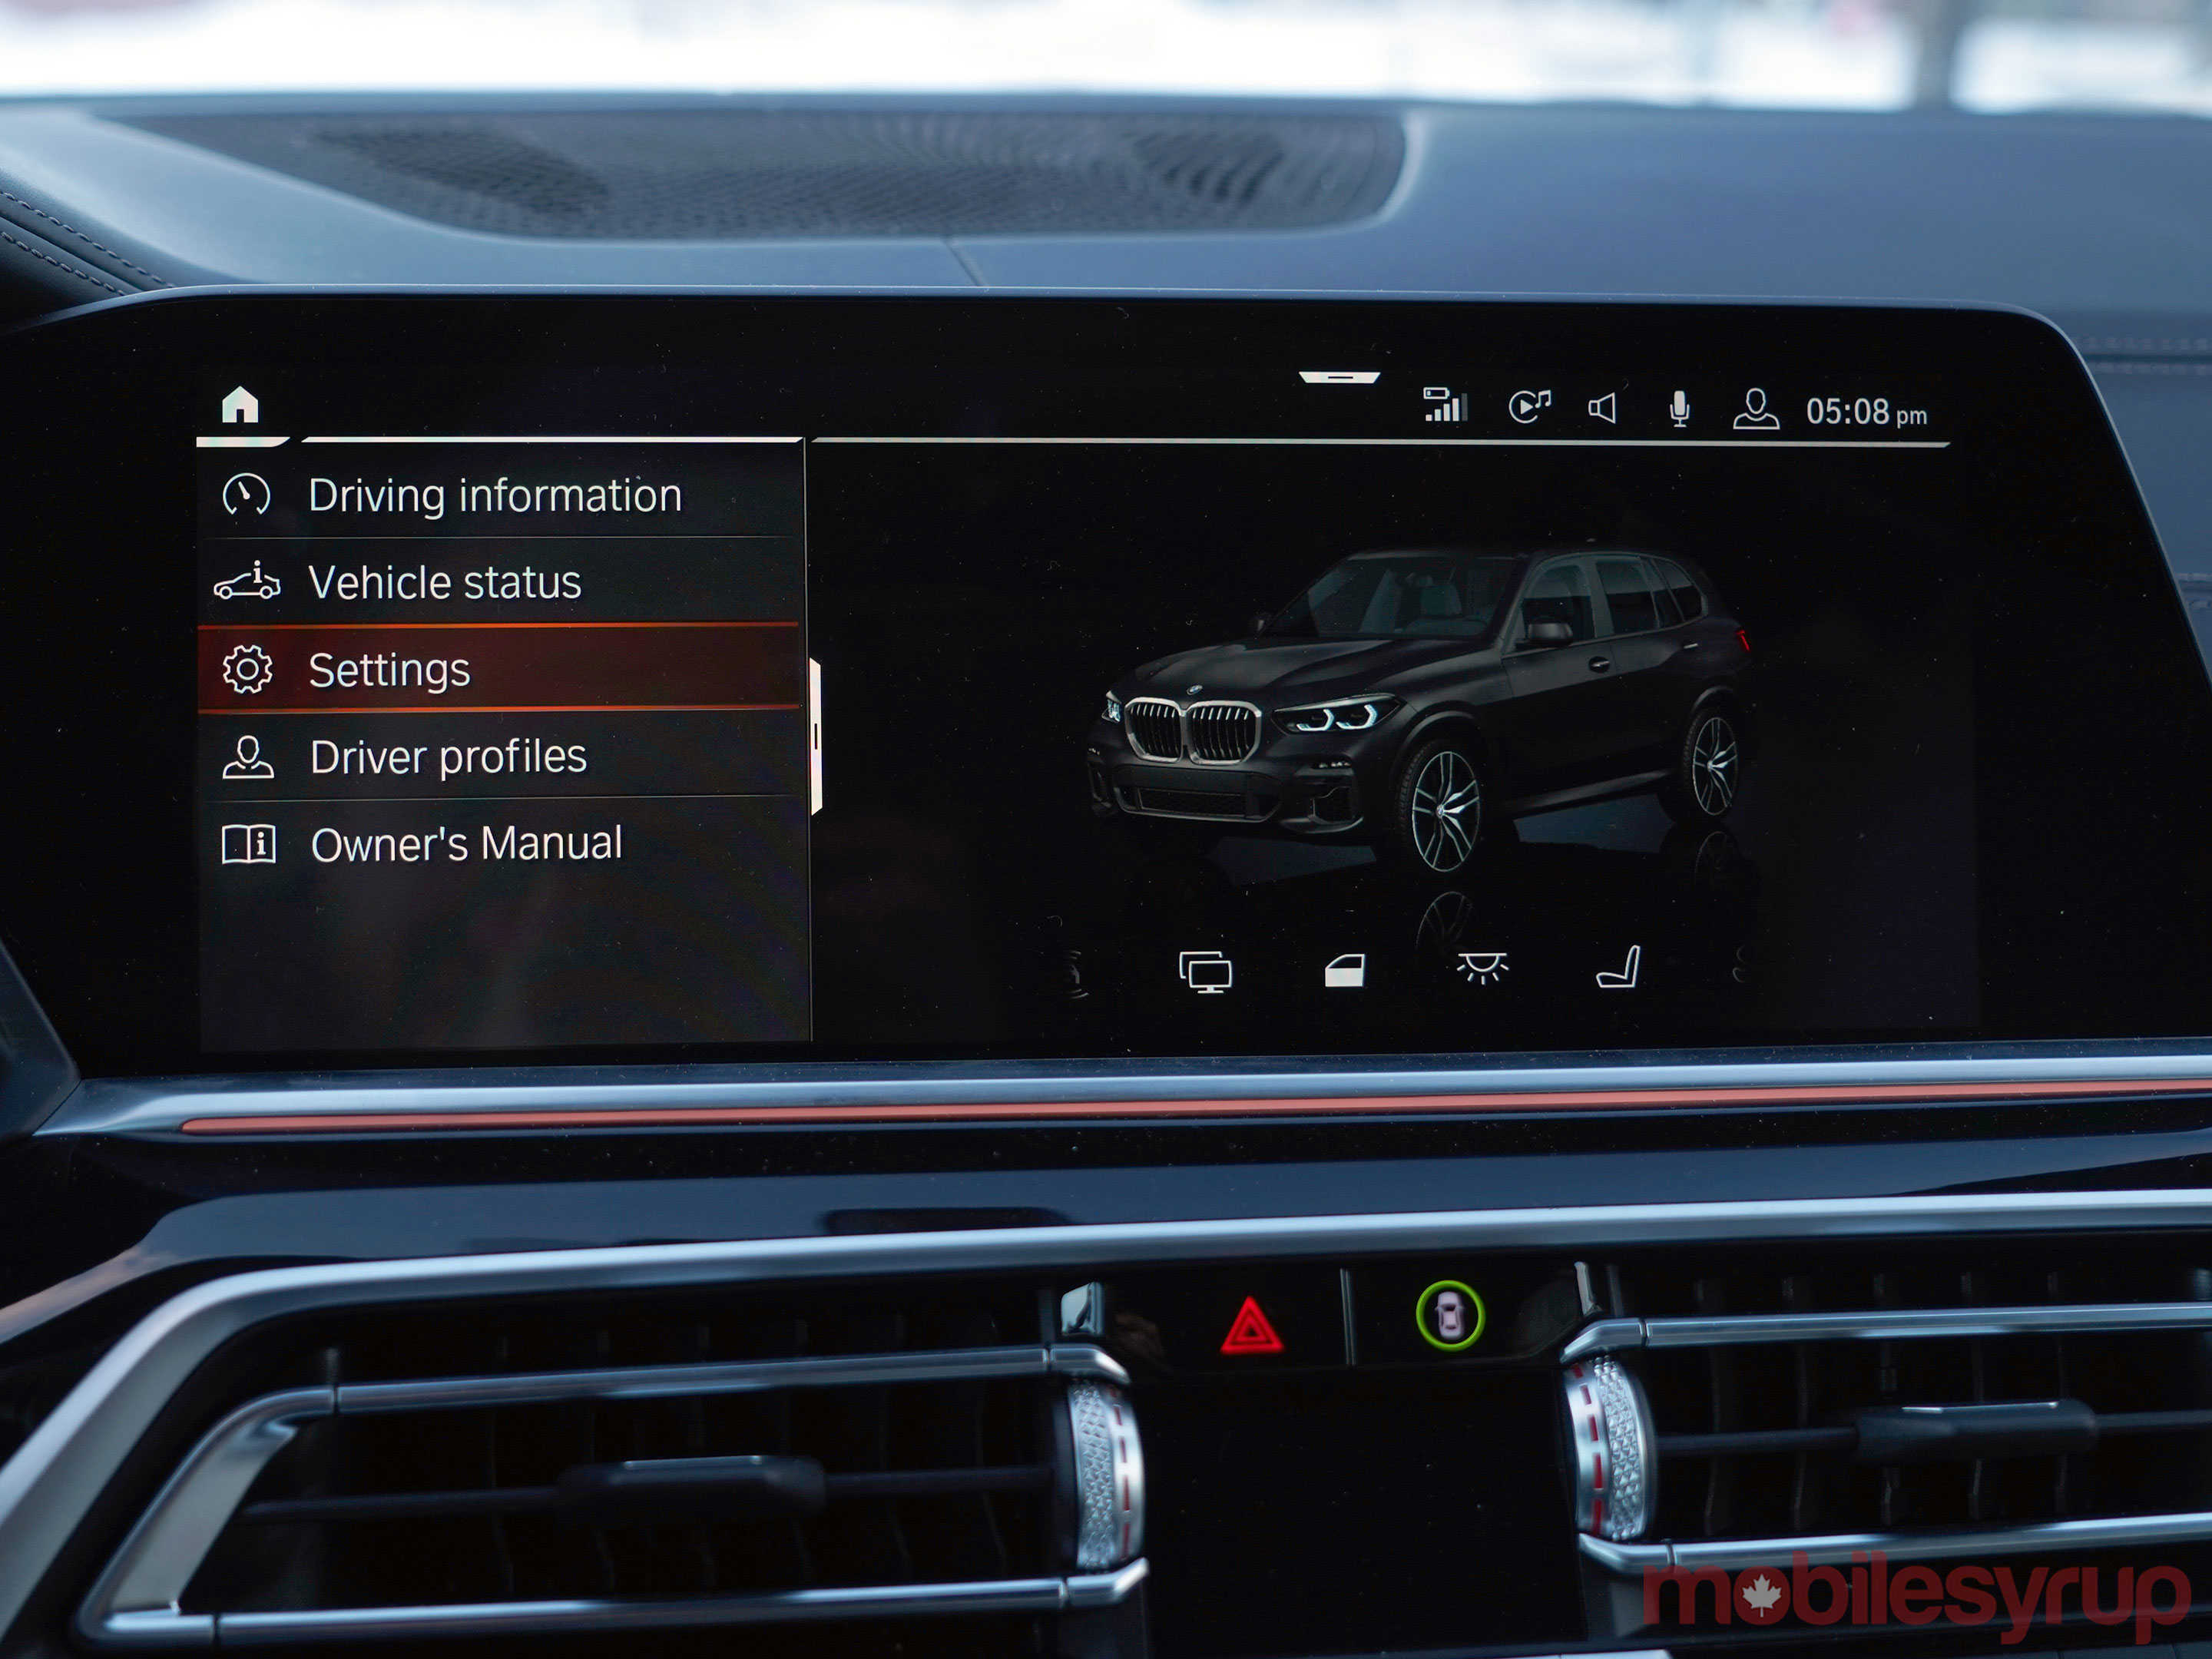 BMW iDrive interface